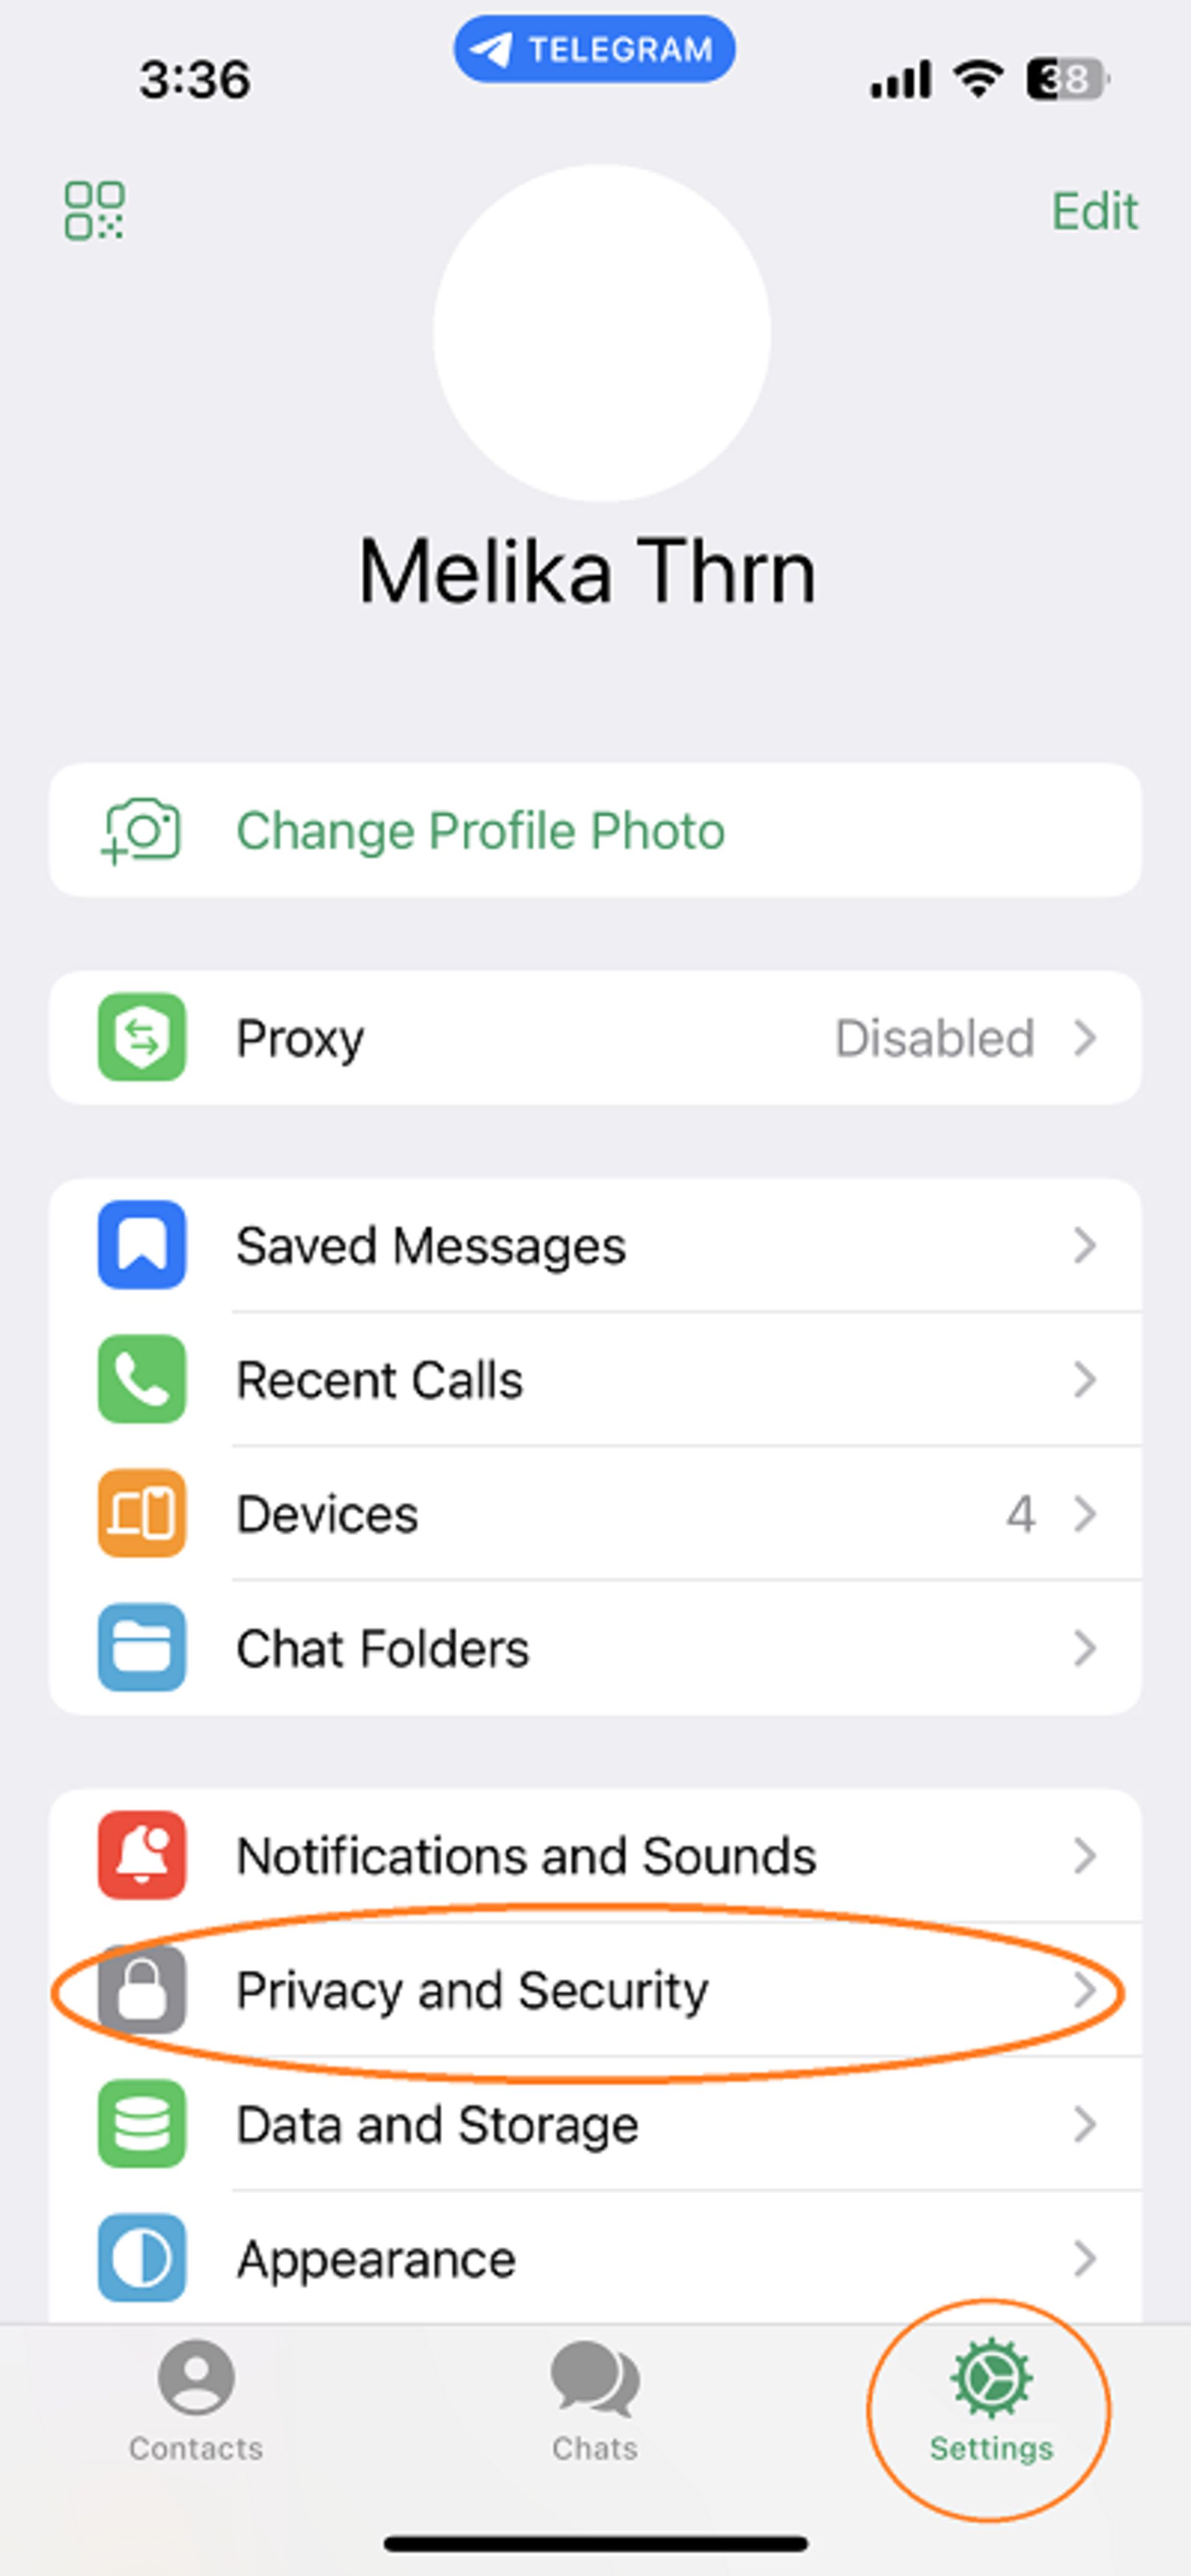 جلوگیری از اضافه شدن خودکار به گروه و کانال تلگرام